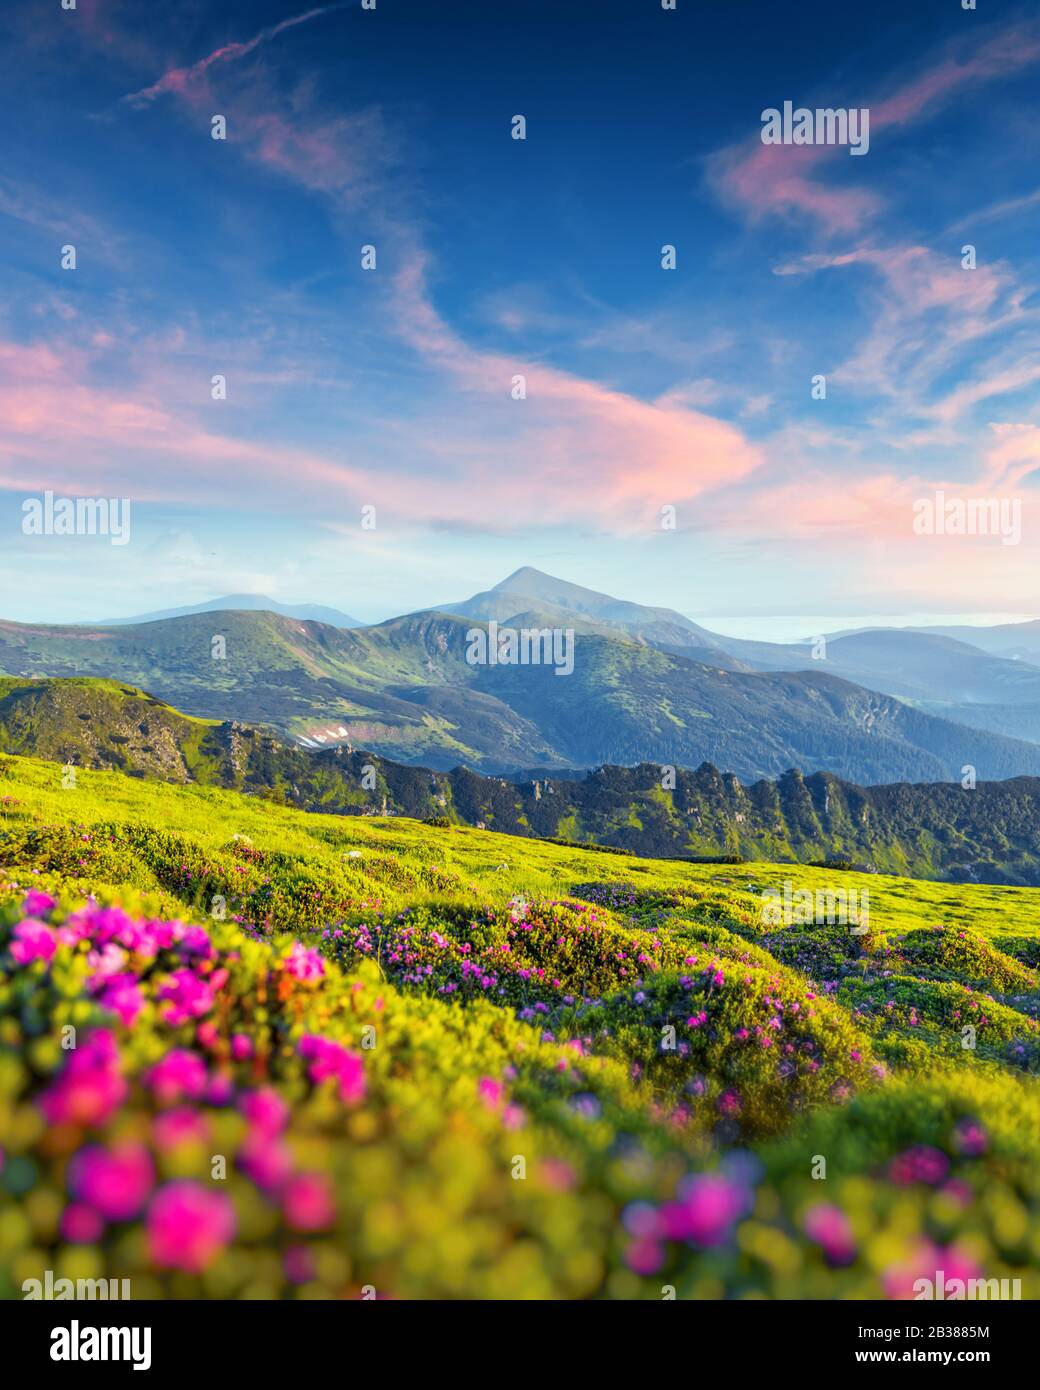 Rhododendron fiori coperti montagne prato in estate. Luce viola dell'alba che si illumina in primo piano. Fotografia di paesaggio Foto Stock